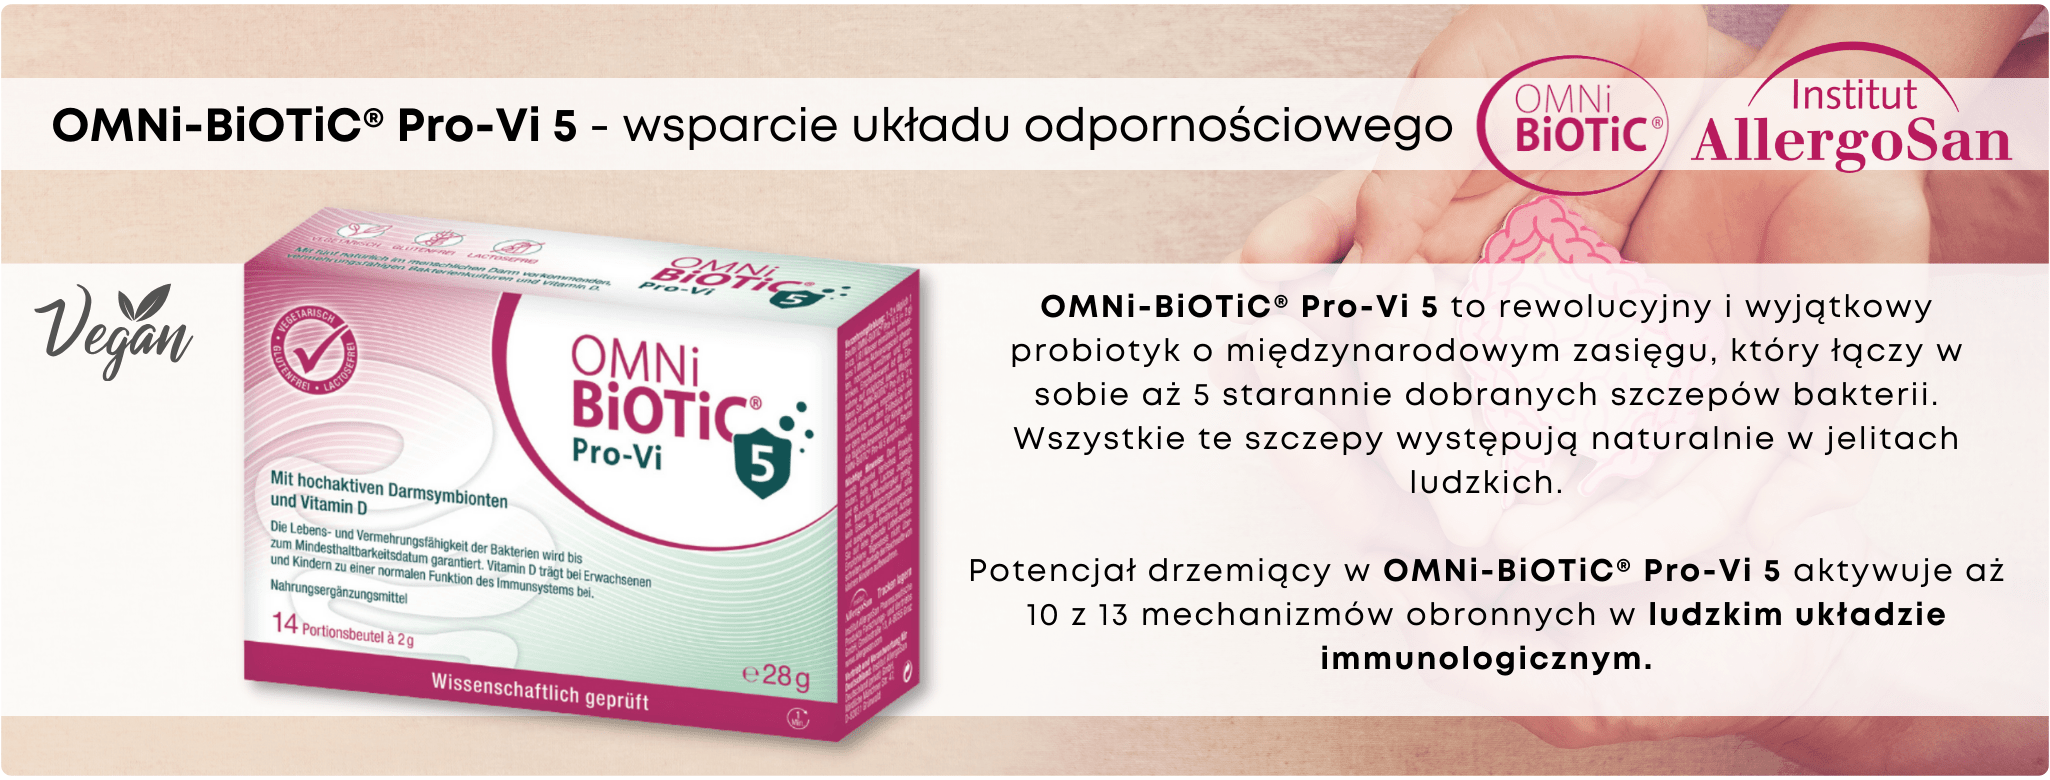 Omni-Biotic Pro-Vit 5